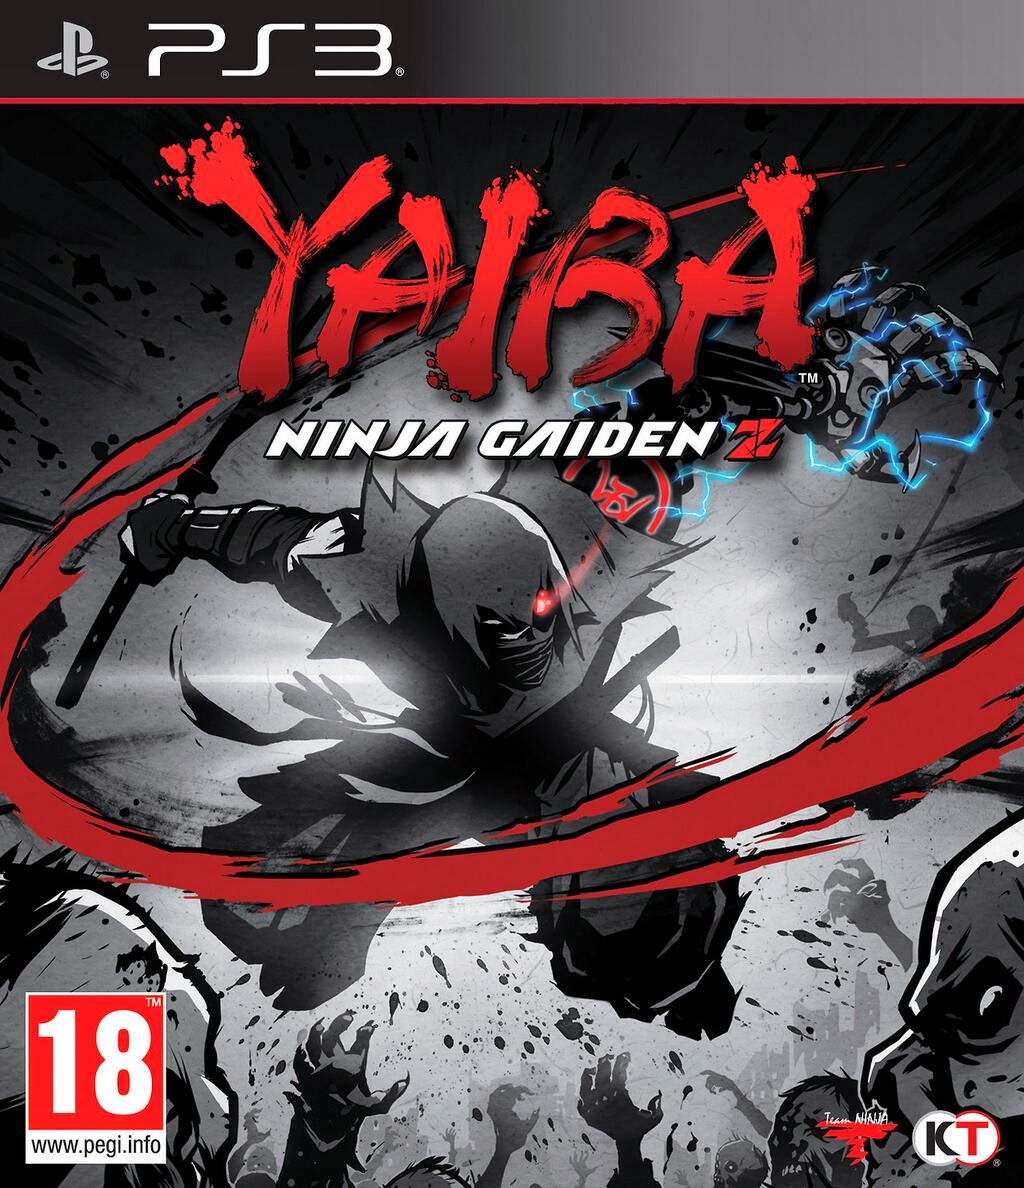 Ninja Gaiden PC - Ninja Gaiden PC Download